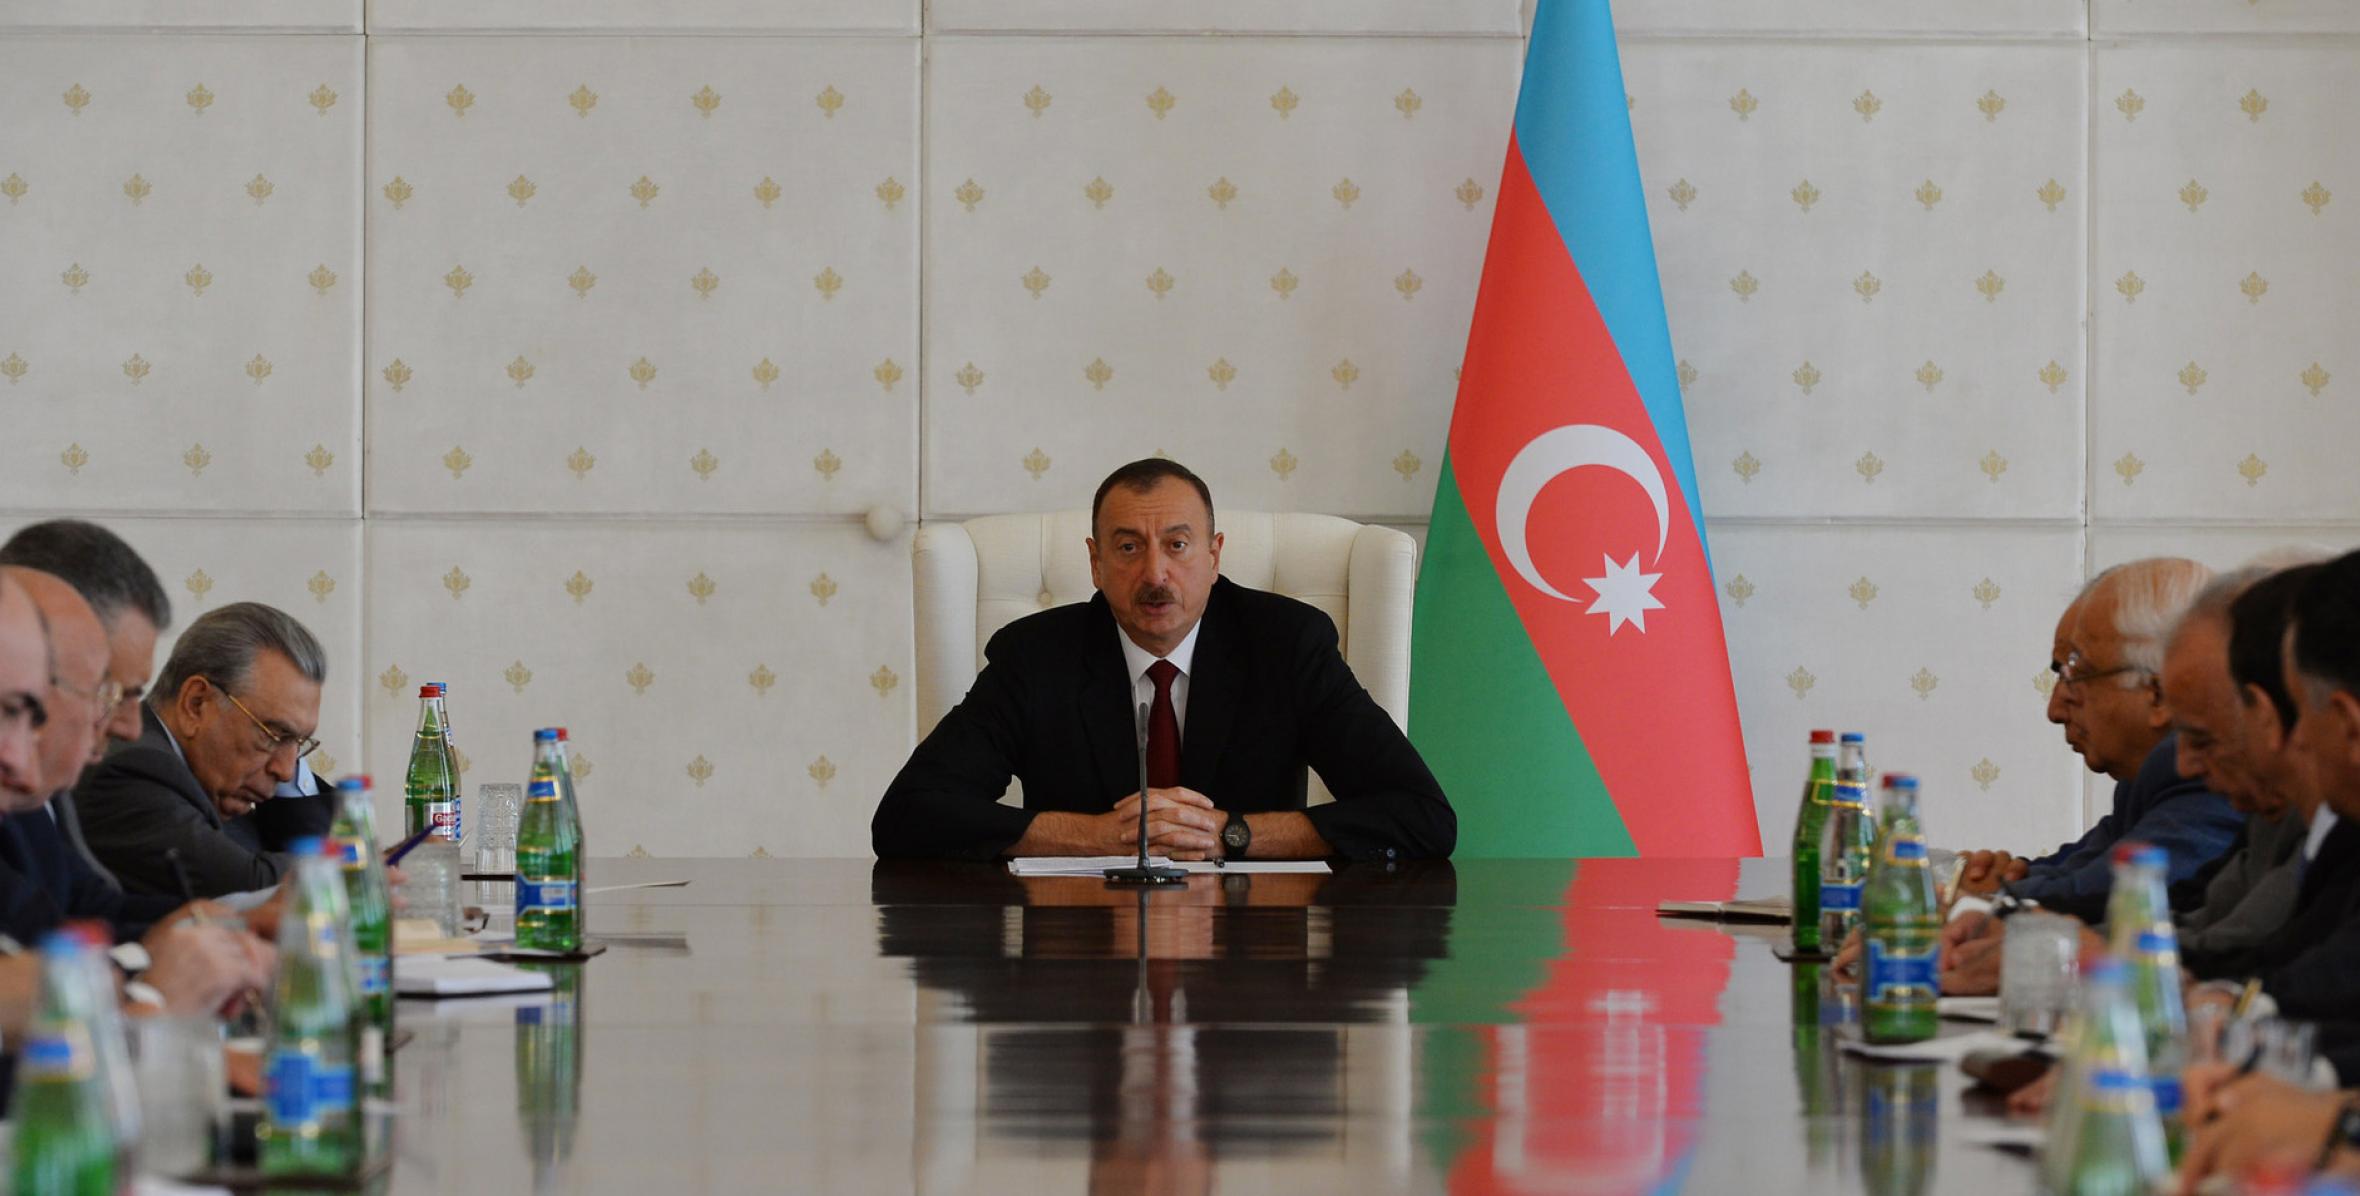 Заключительная речь Ильхама Алиева на заседании Кабинета Министров, посвященном итогам социально-экономического развития в первом полугодии 2015 года и предстоящим задачам